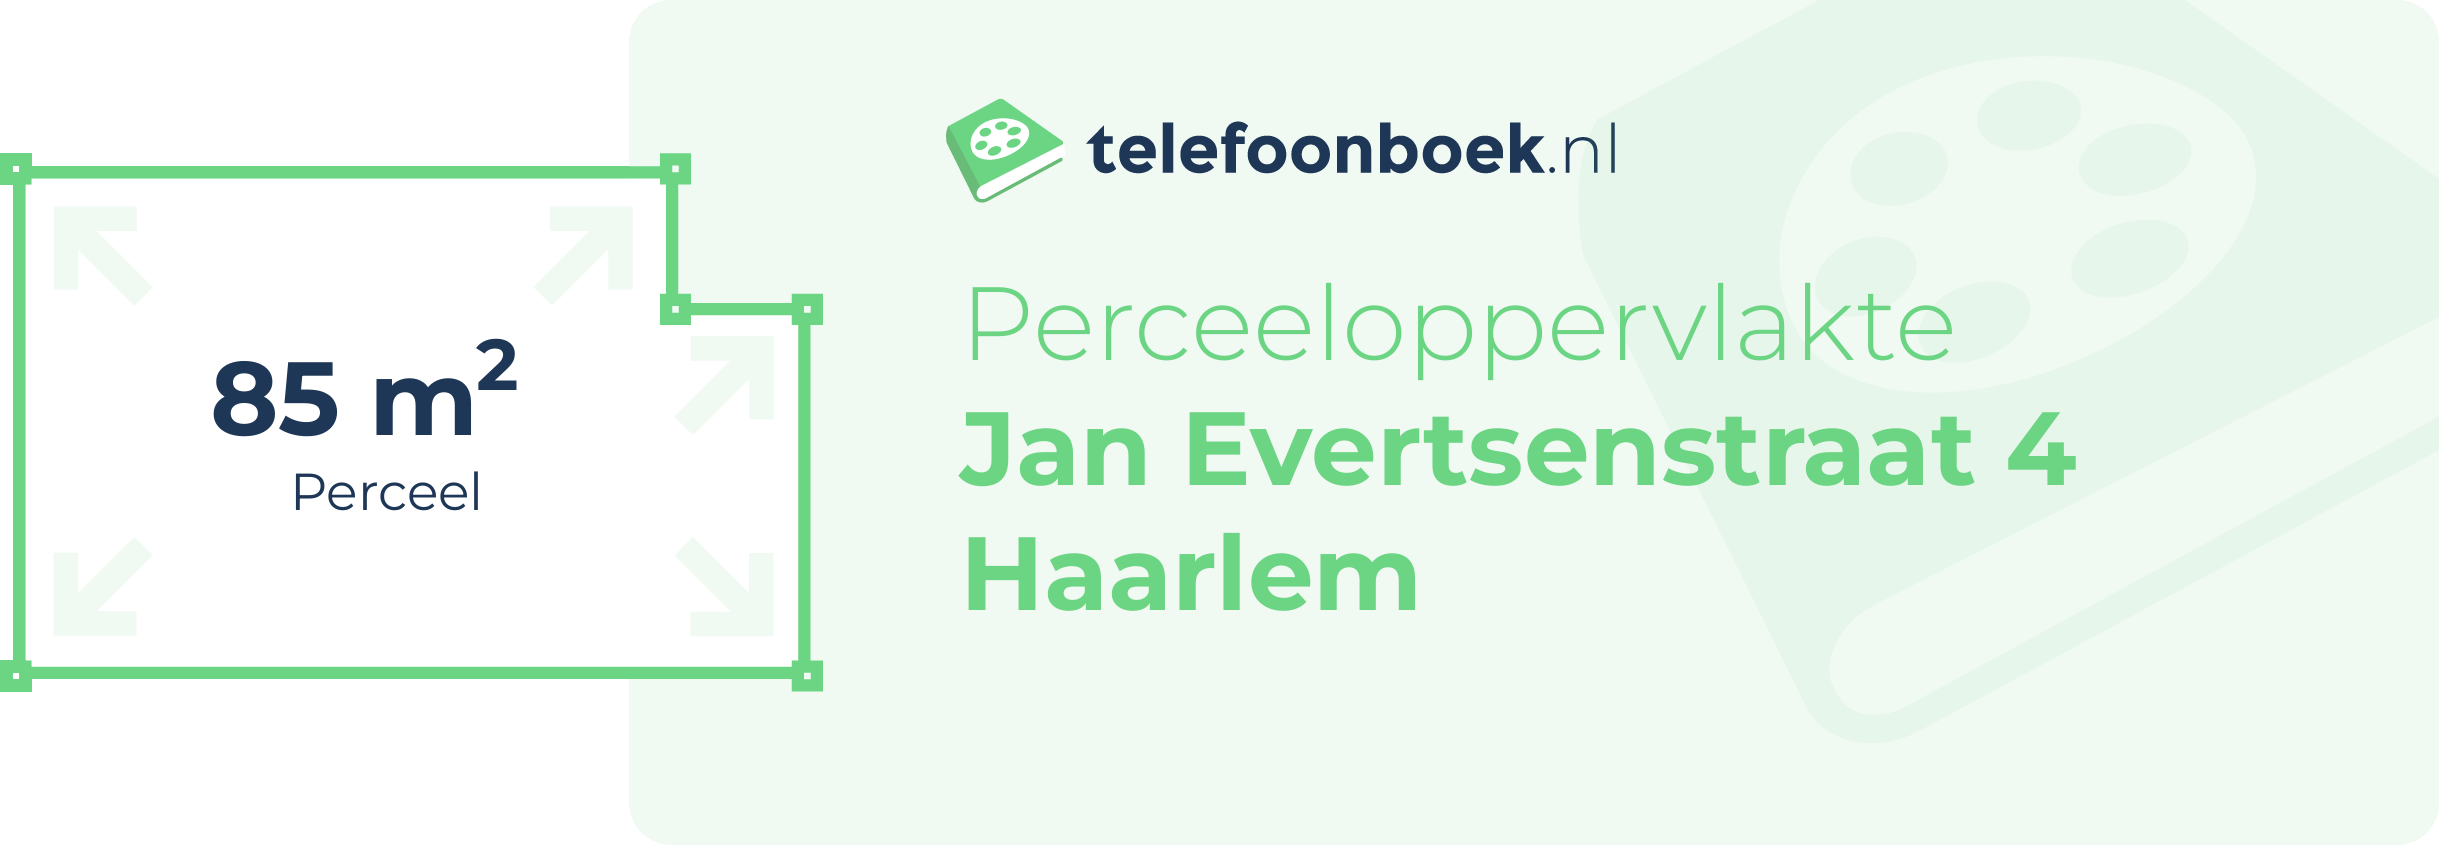 Perceeloppervlakte Jan Evertsenstraat 4 Haarlem